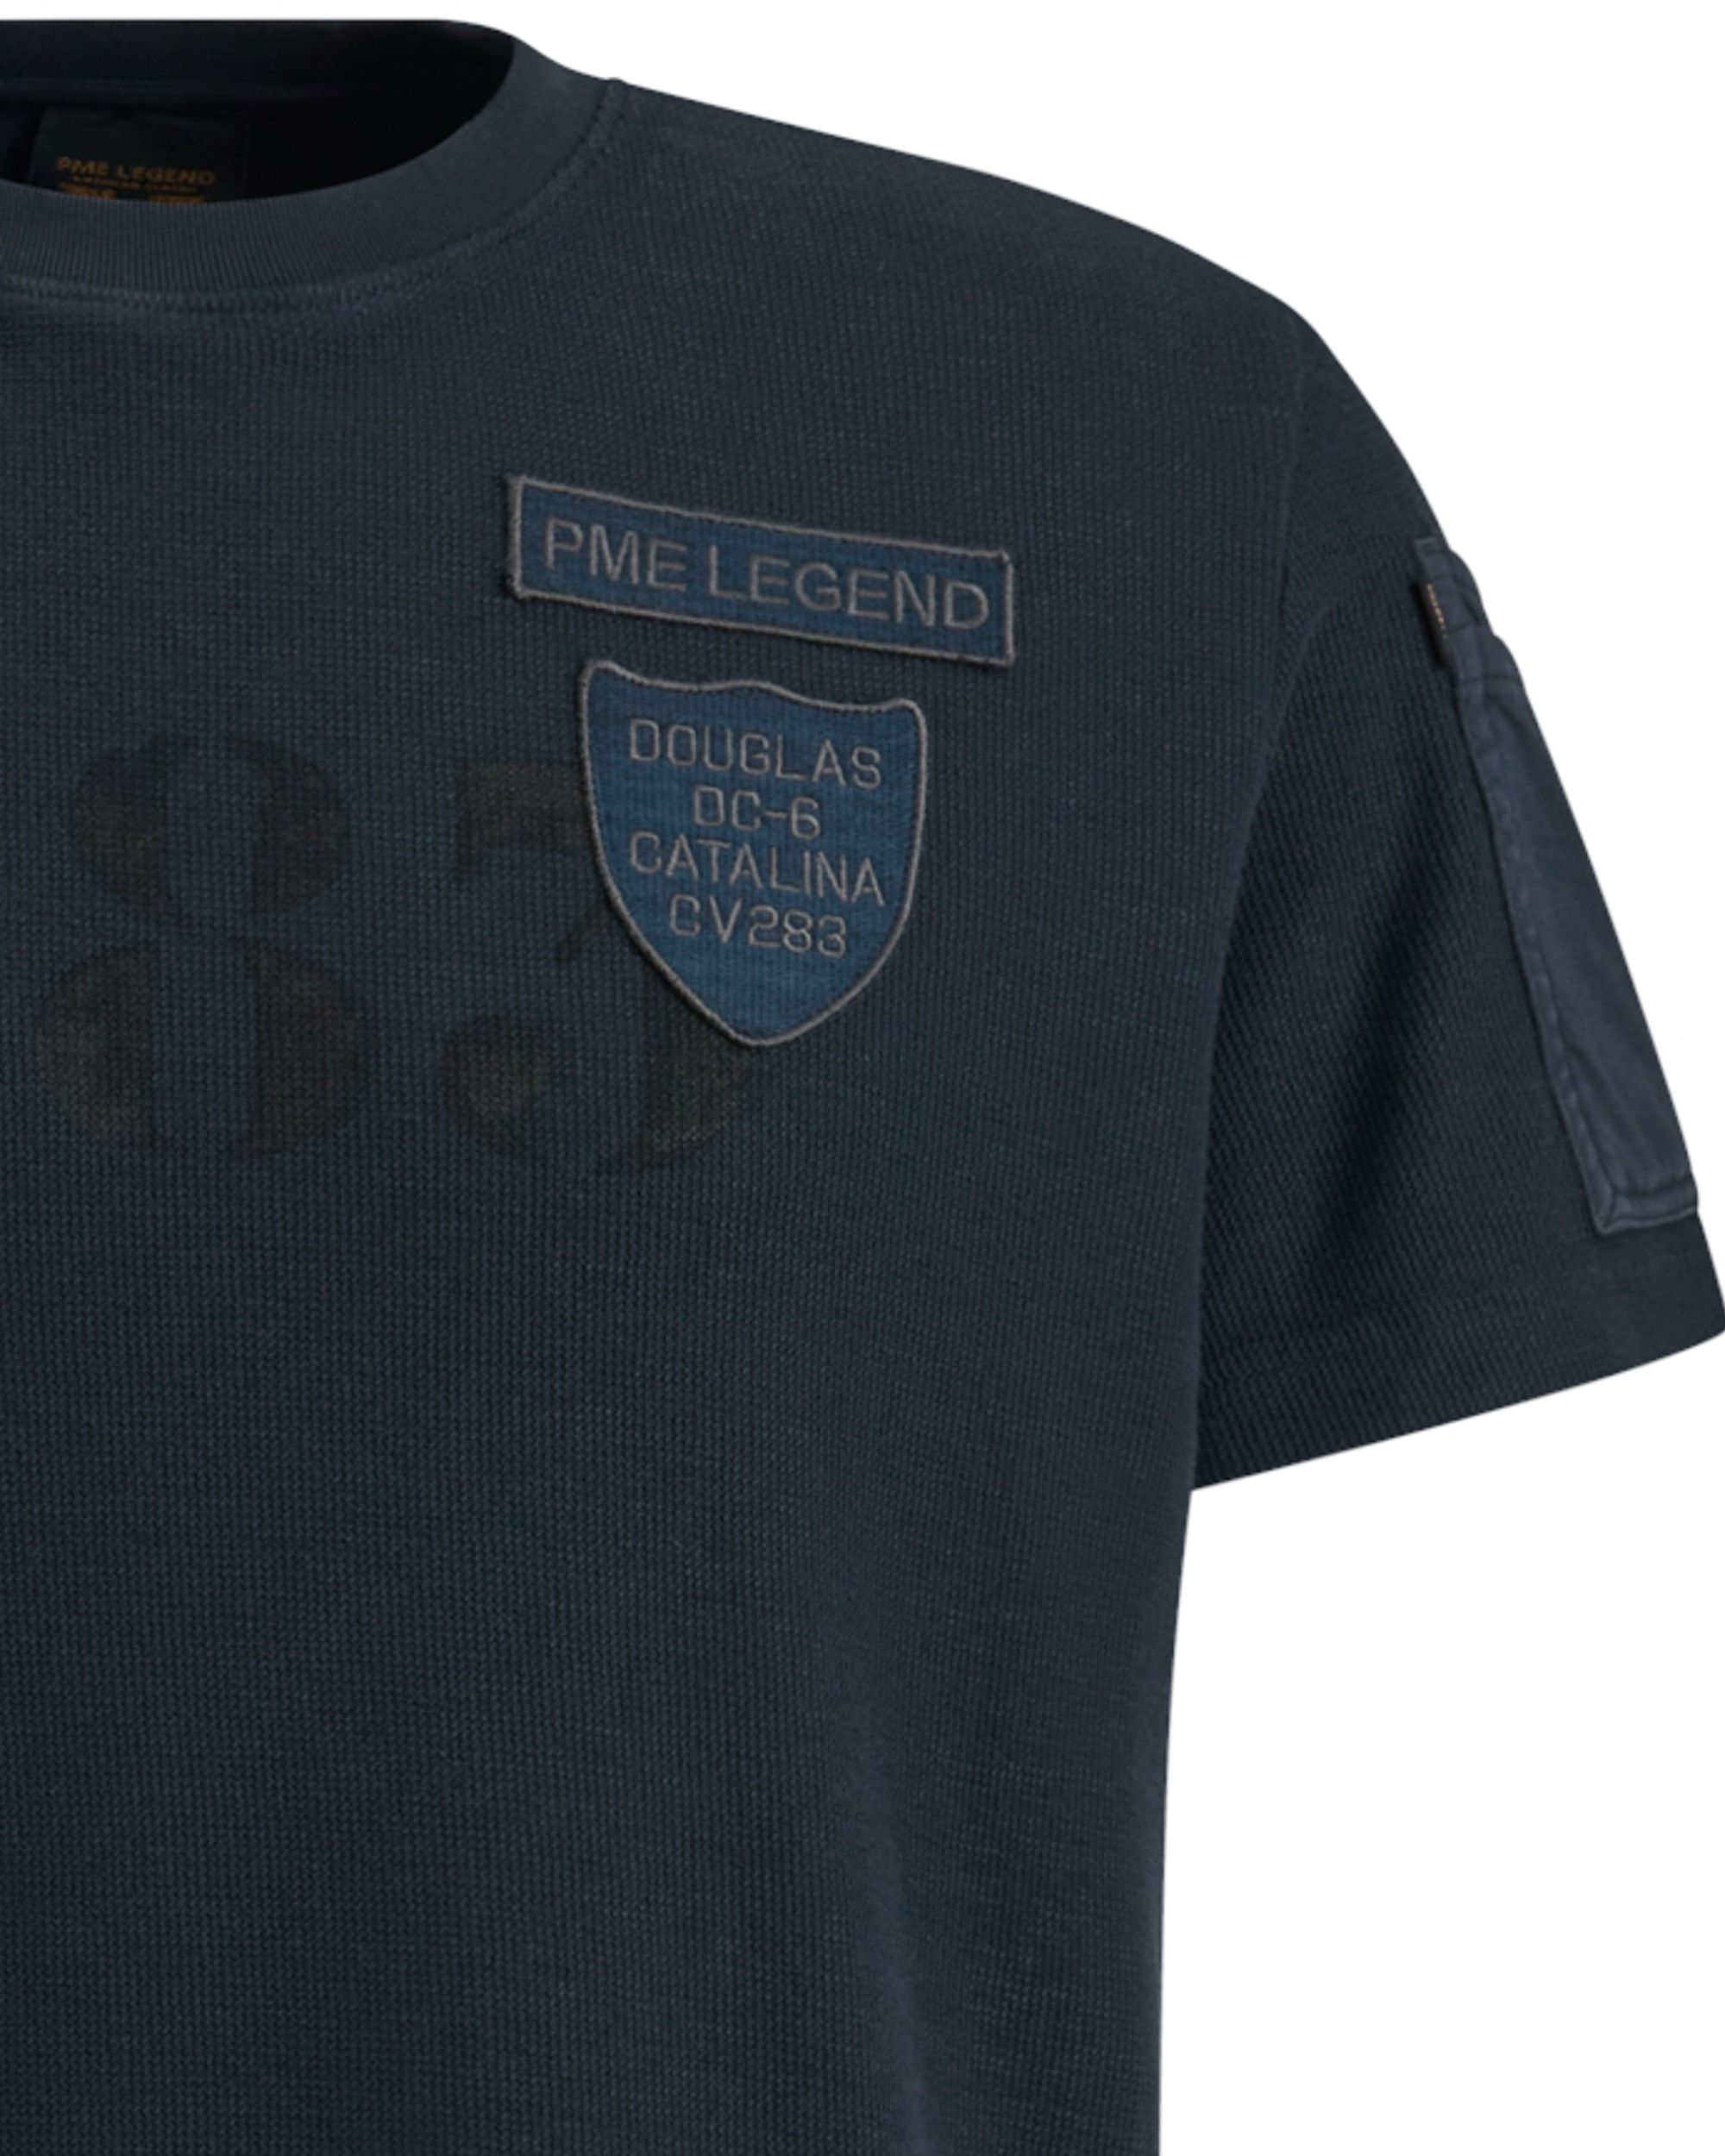 PME Legend T-shirt KM Blauw 092296-001-L